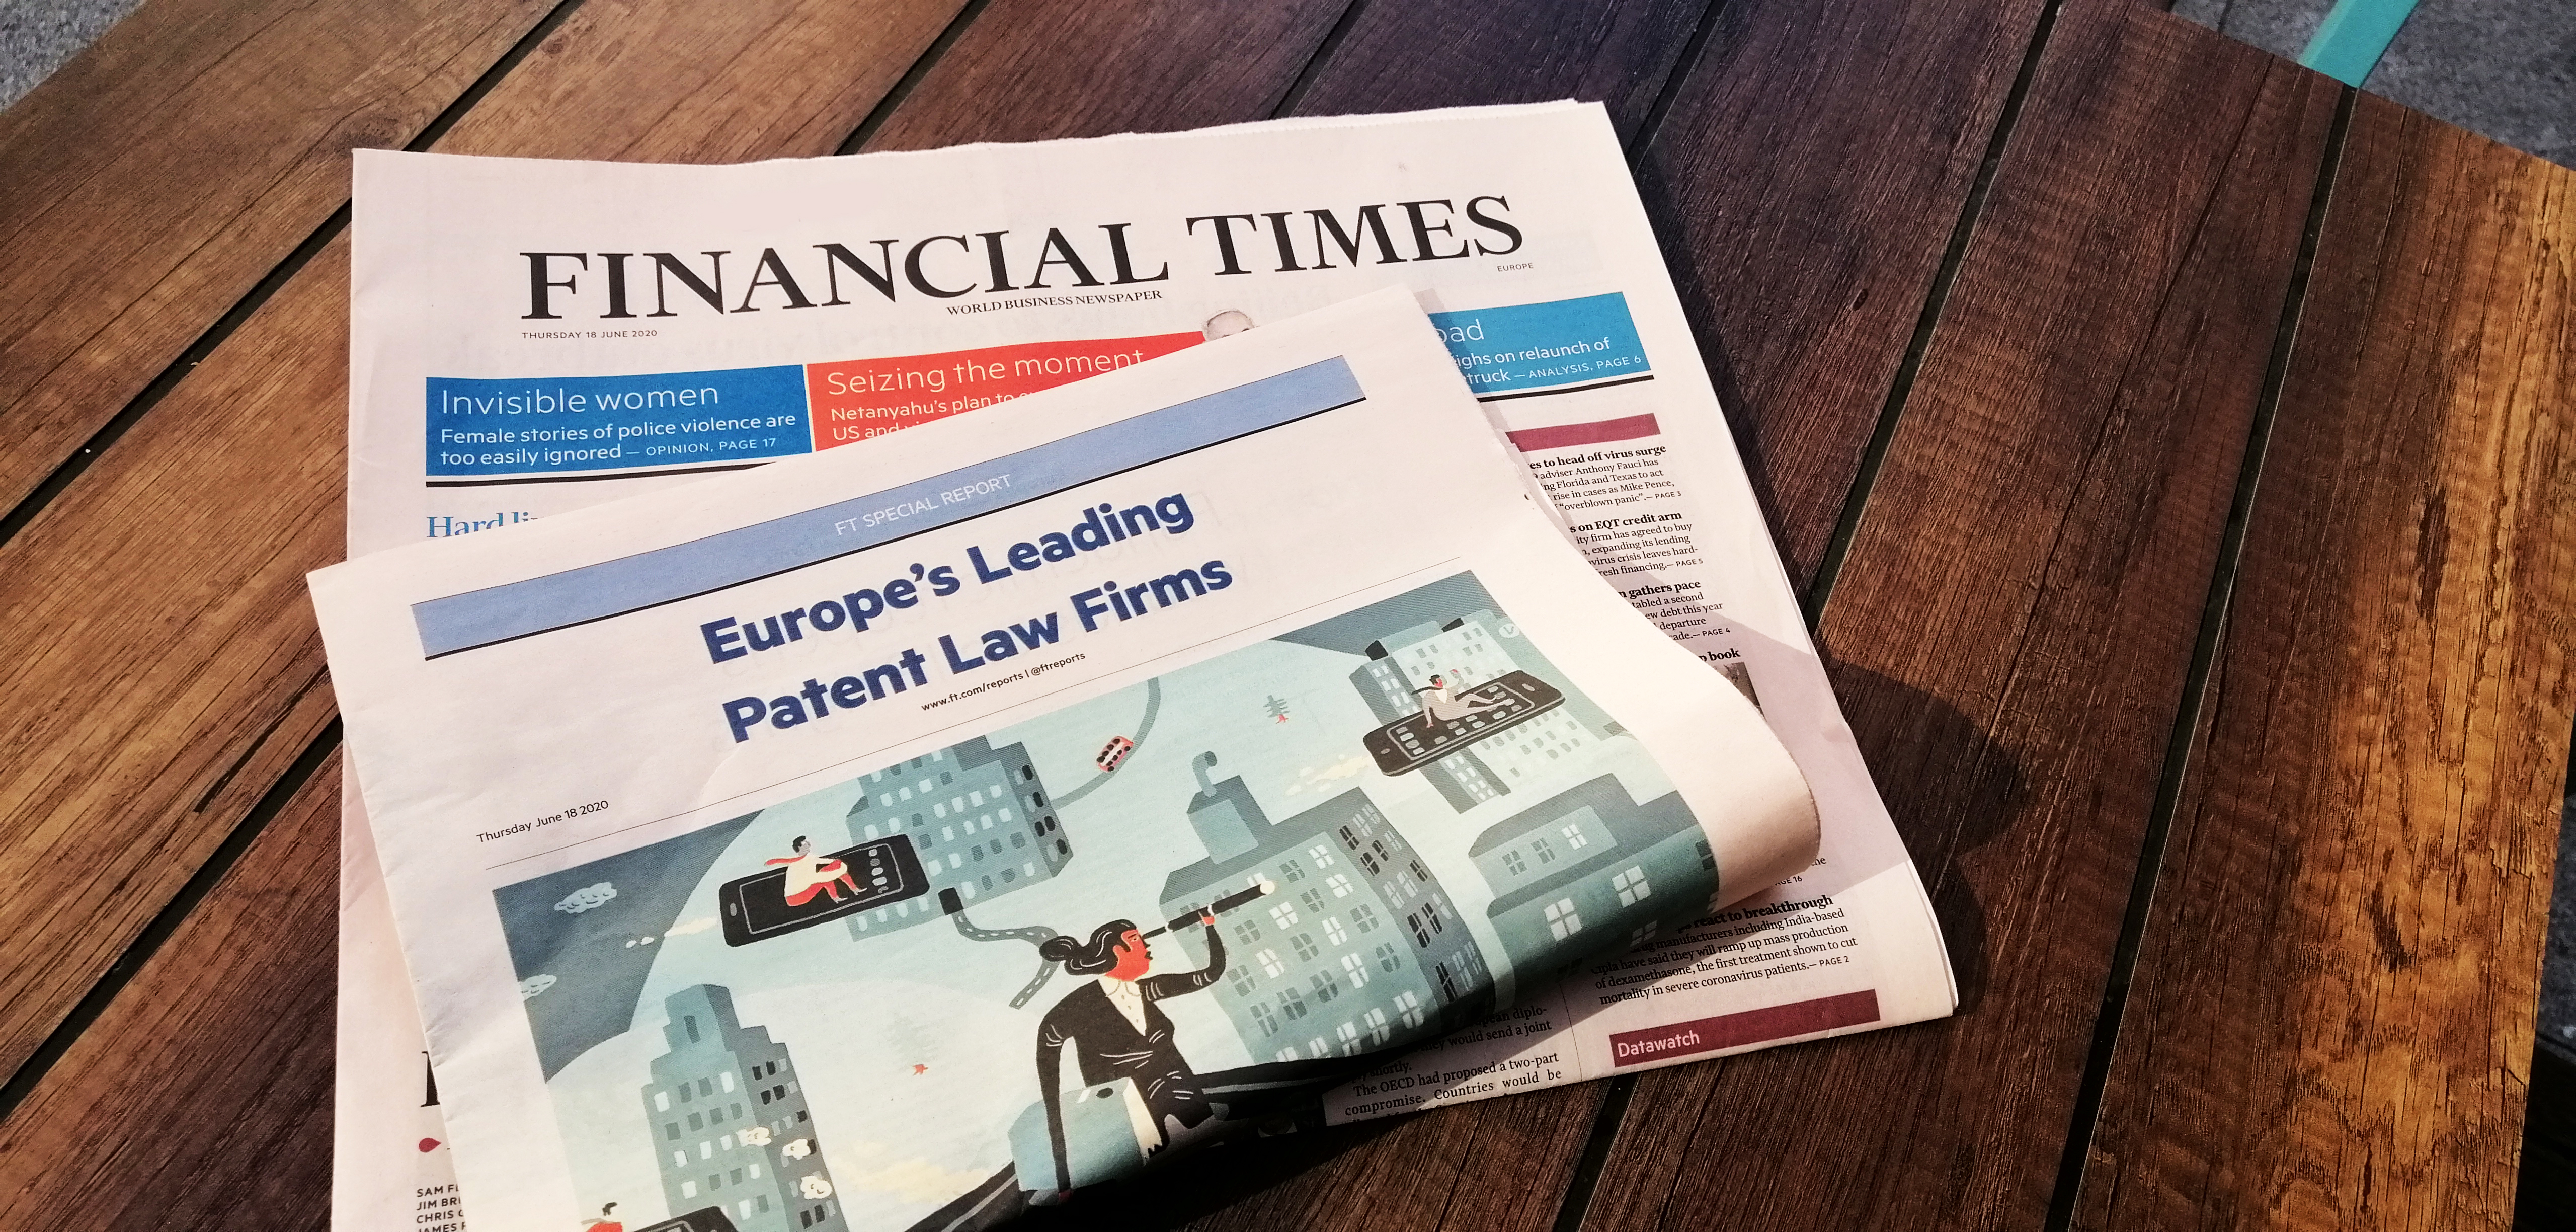 2019 - ABG Intellectual Property es la única firma española seleccionada por Financial Times en su “Europe’s Leading Patent Law Firms 2019”